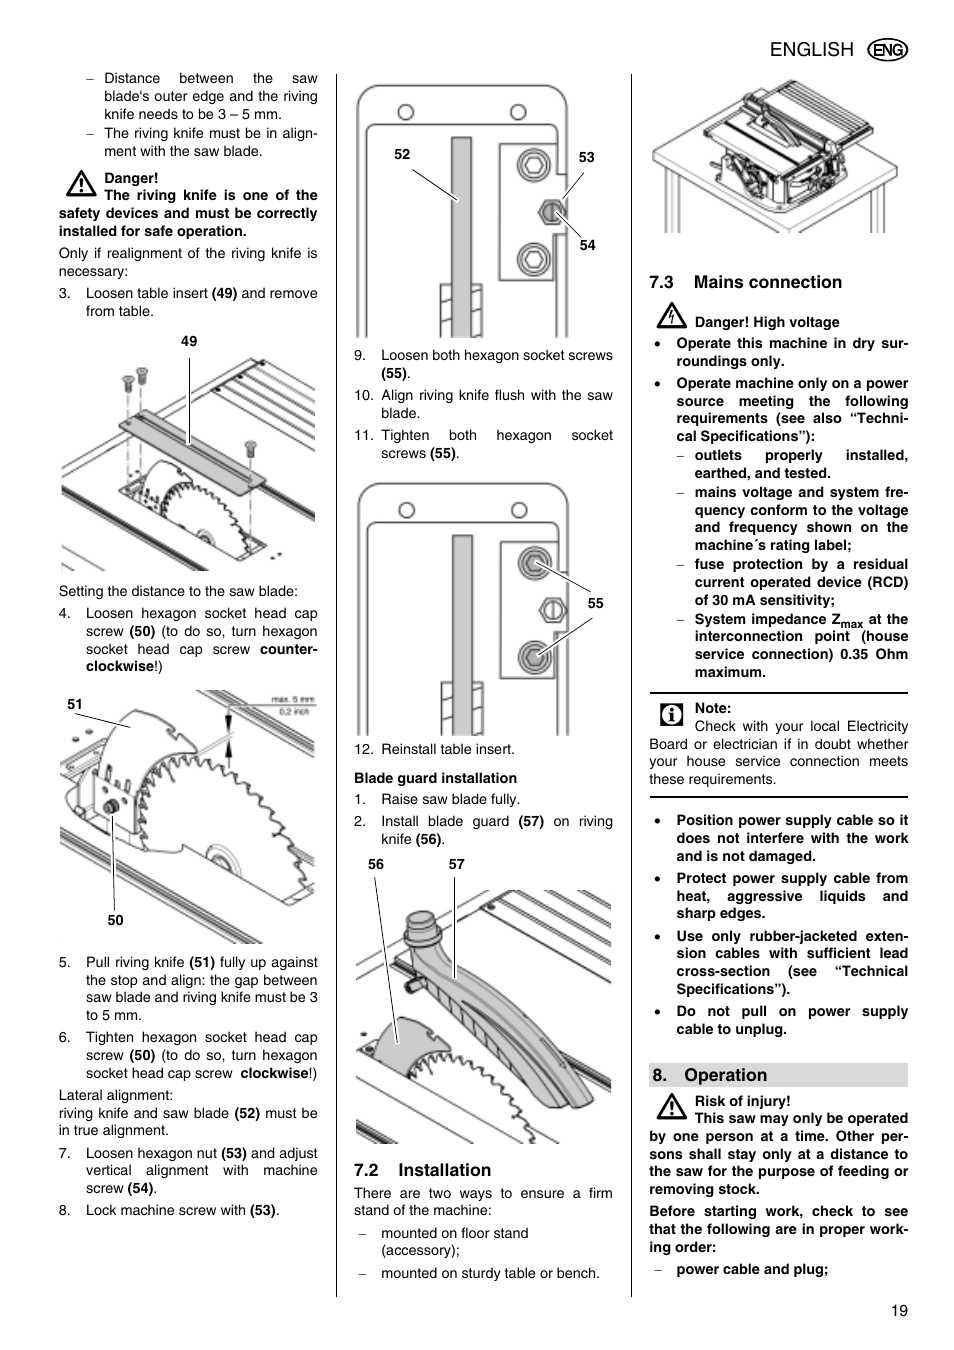 English | Metabo TS 250 User Manual | Page 19 / 47